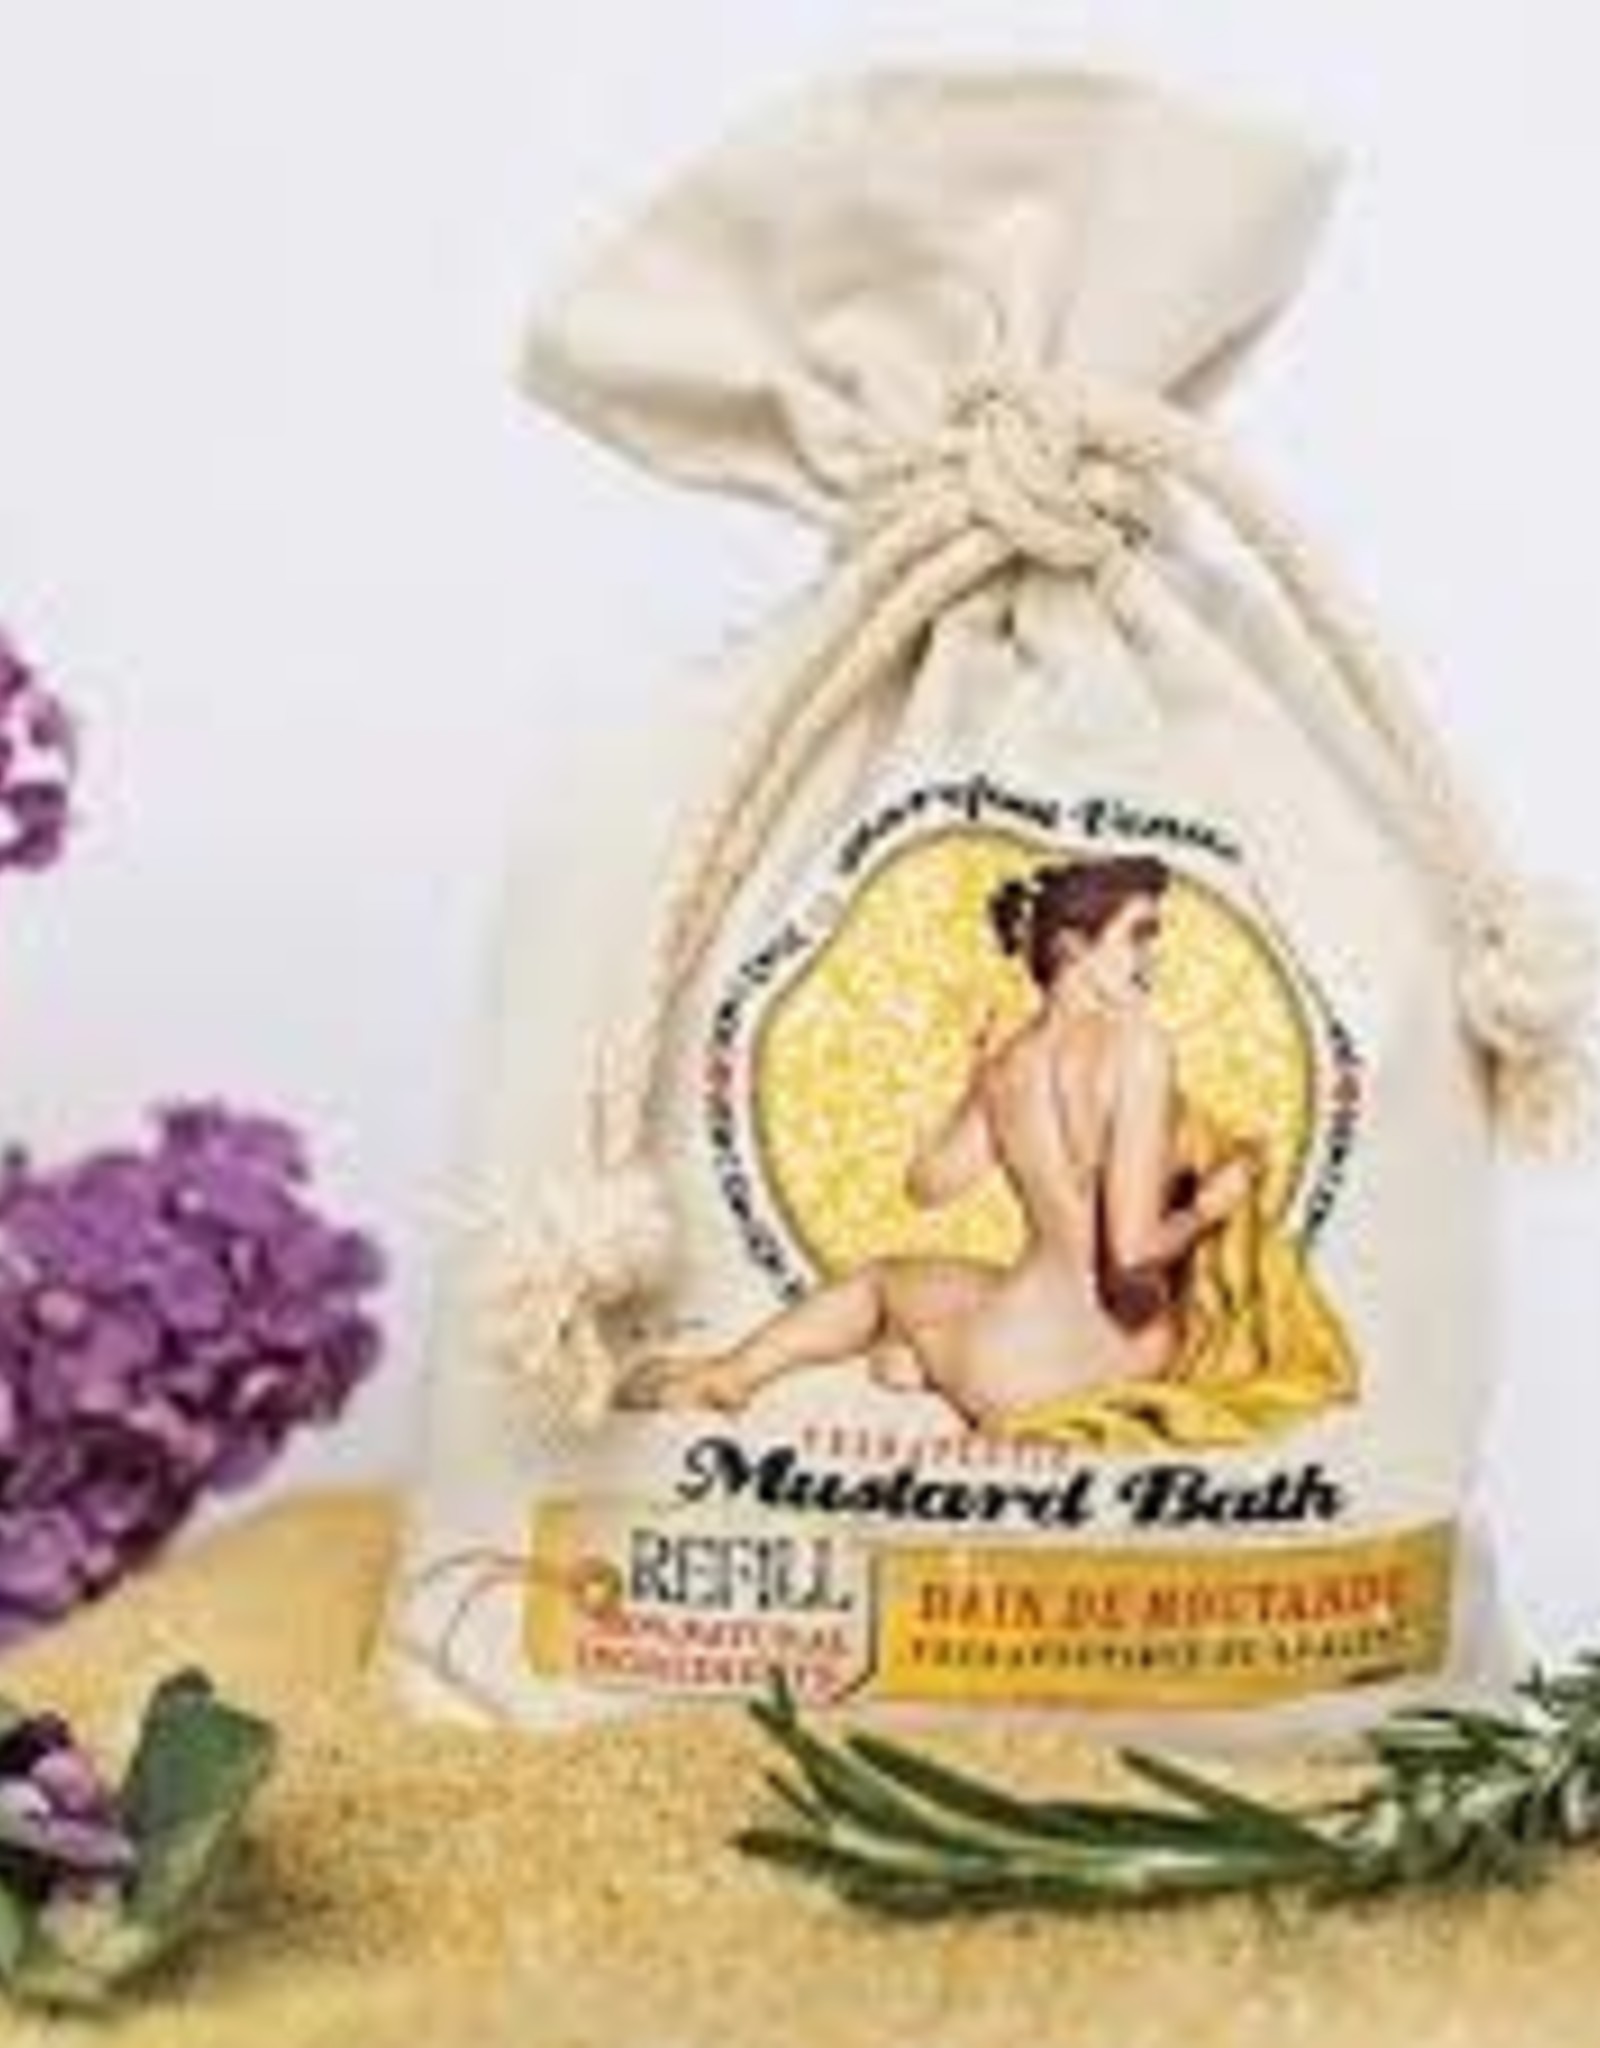 Barefoot Venus BV Mustard Bath Refill